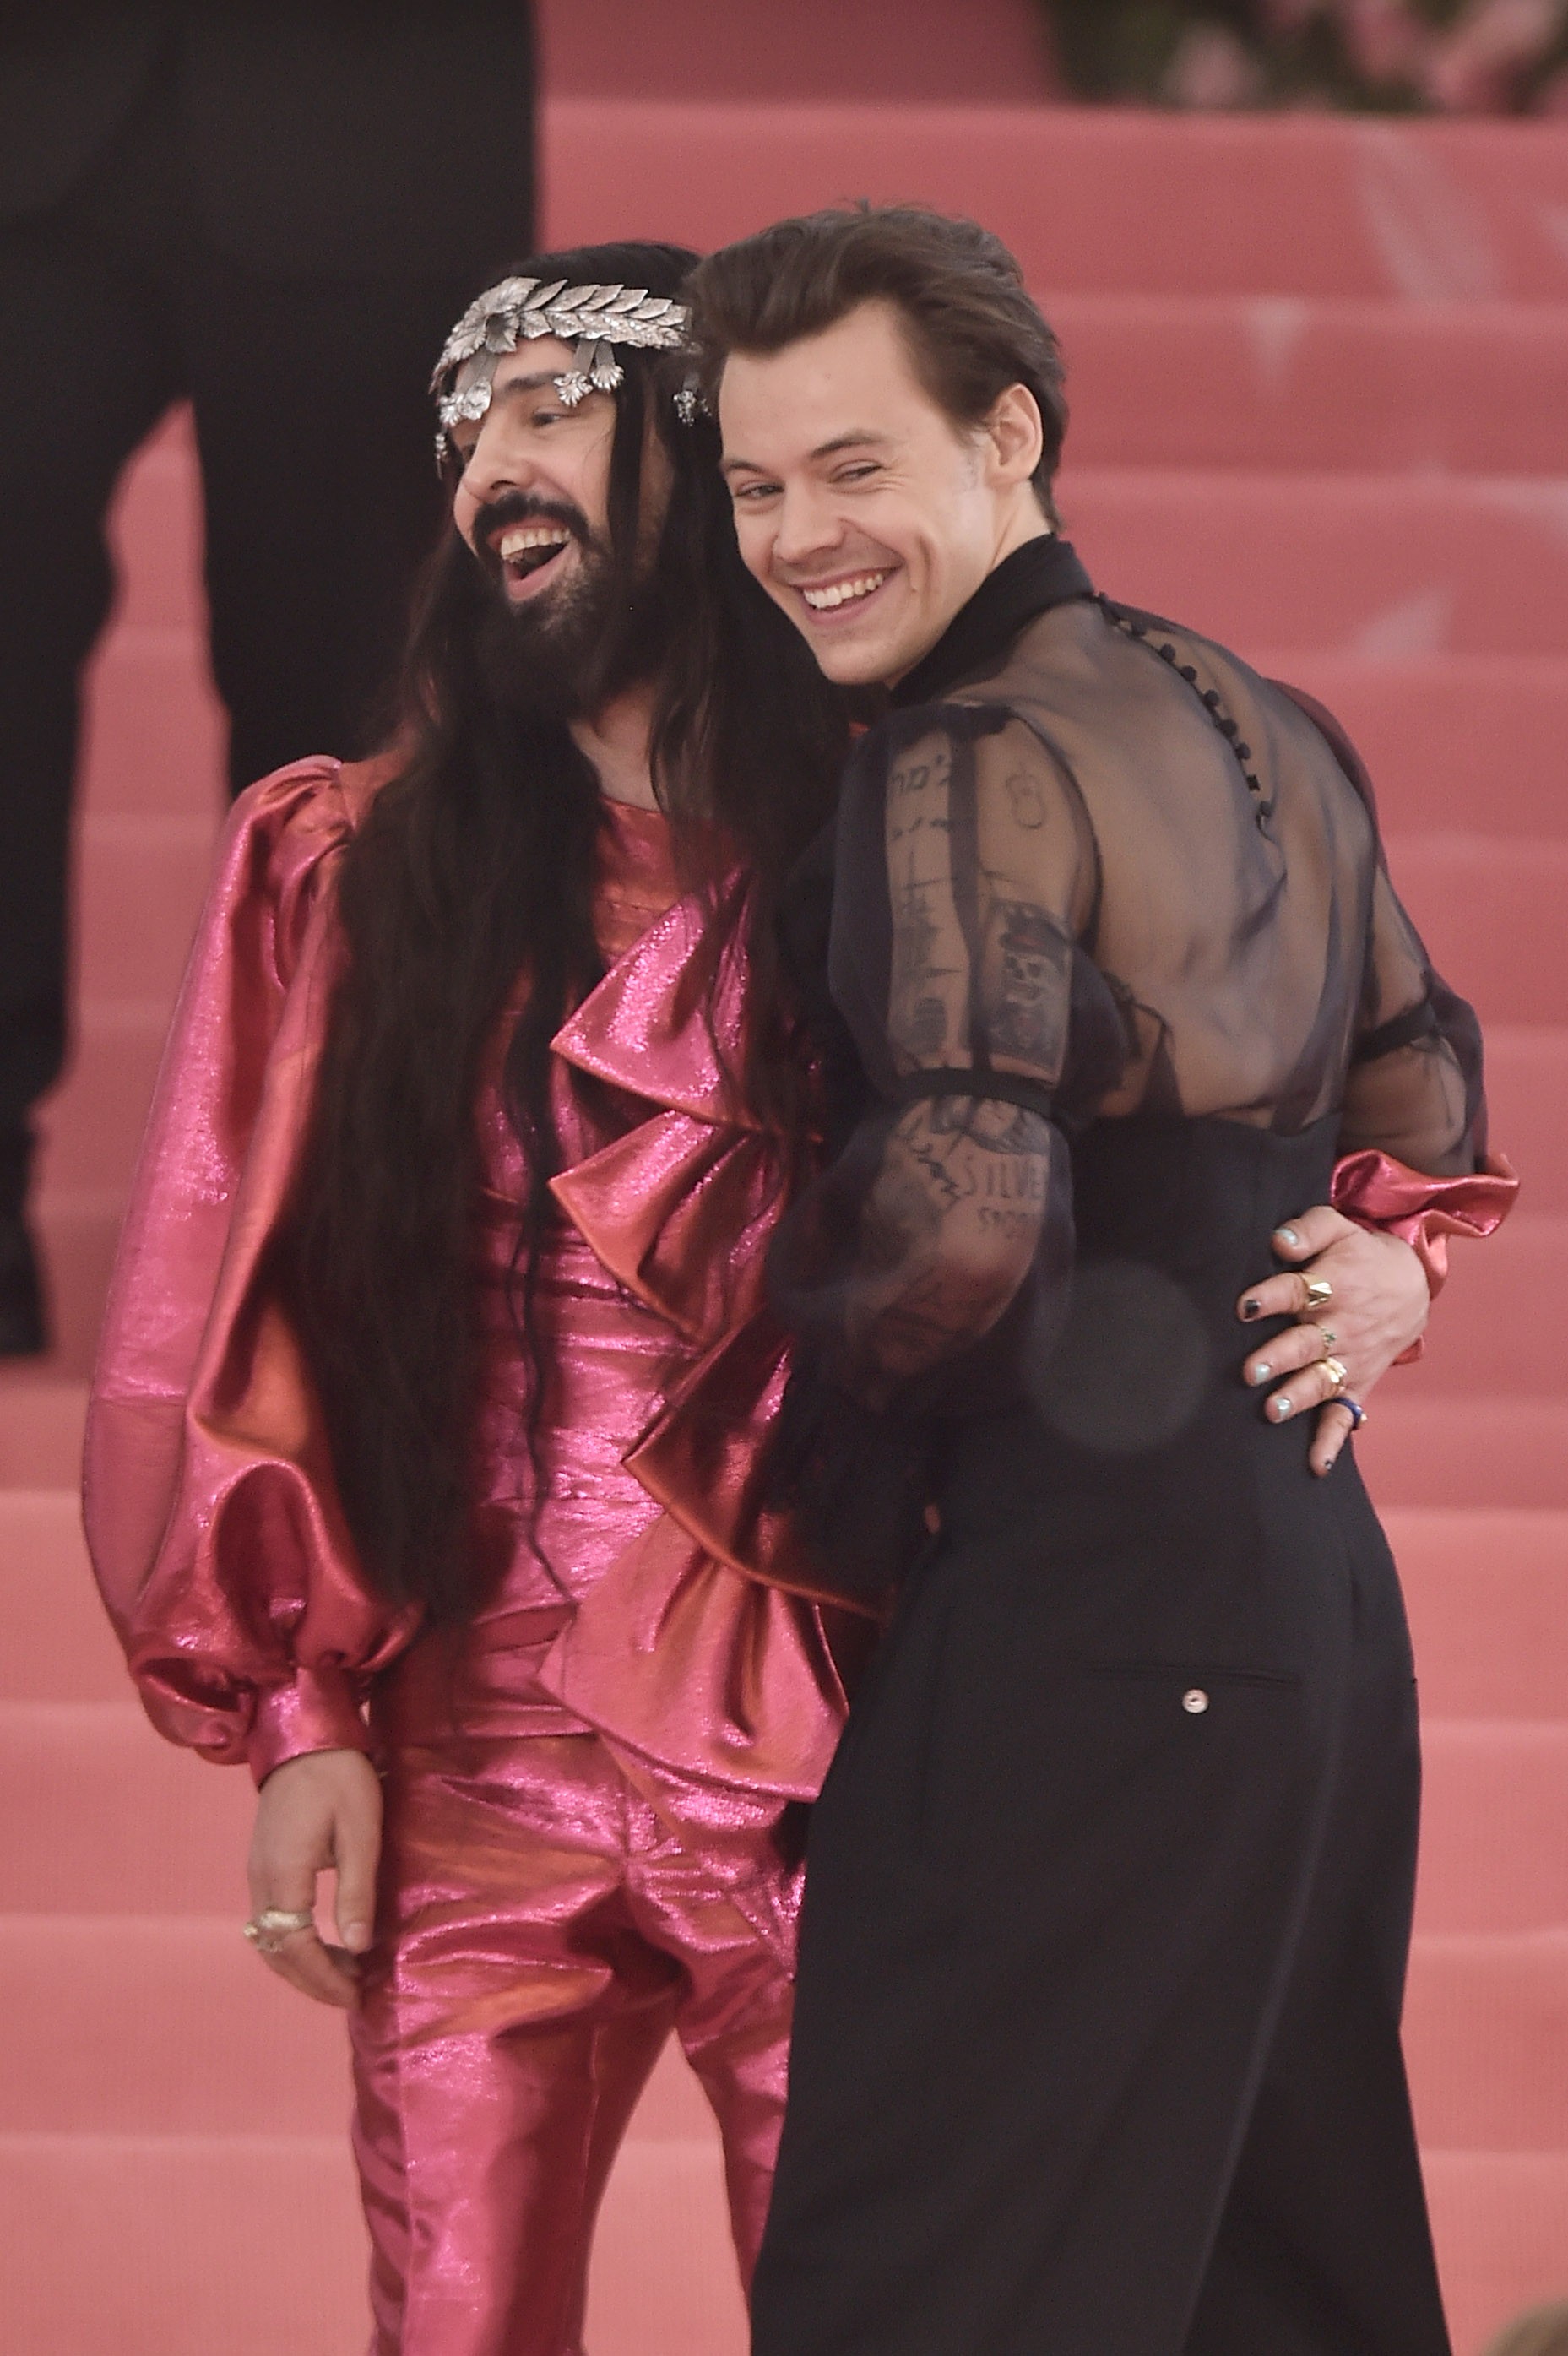 Amigos de lonha data: Harry Styles e Alessandro Michele, diretor criativo da Gucci, em 2019 (Foto: Getty Images)